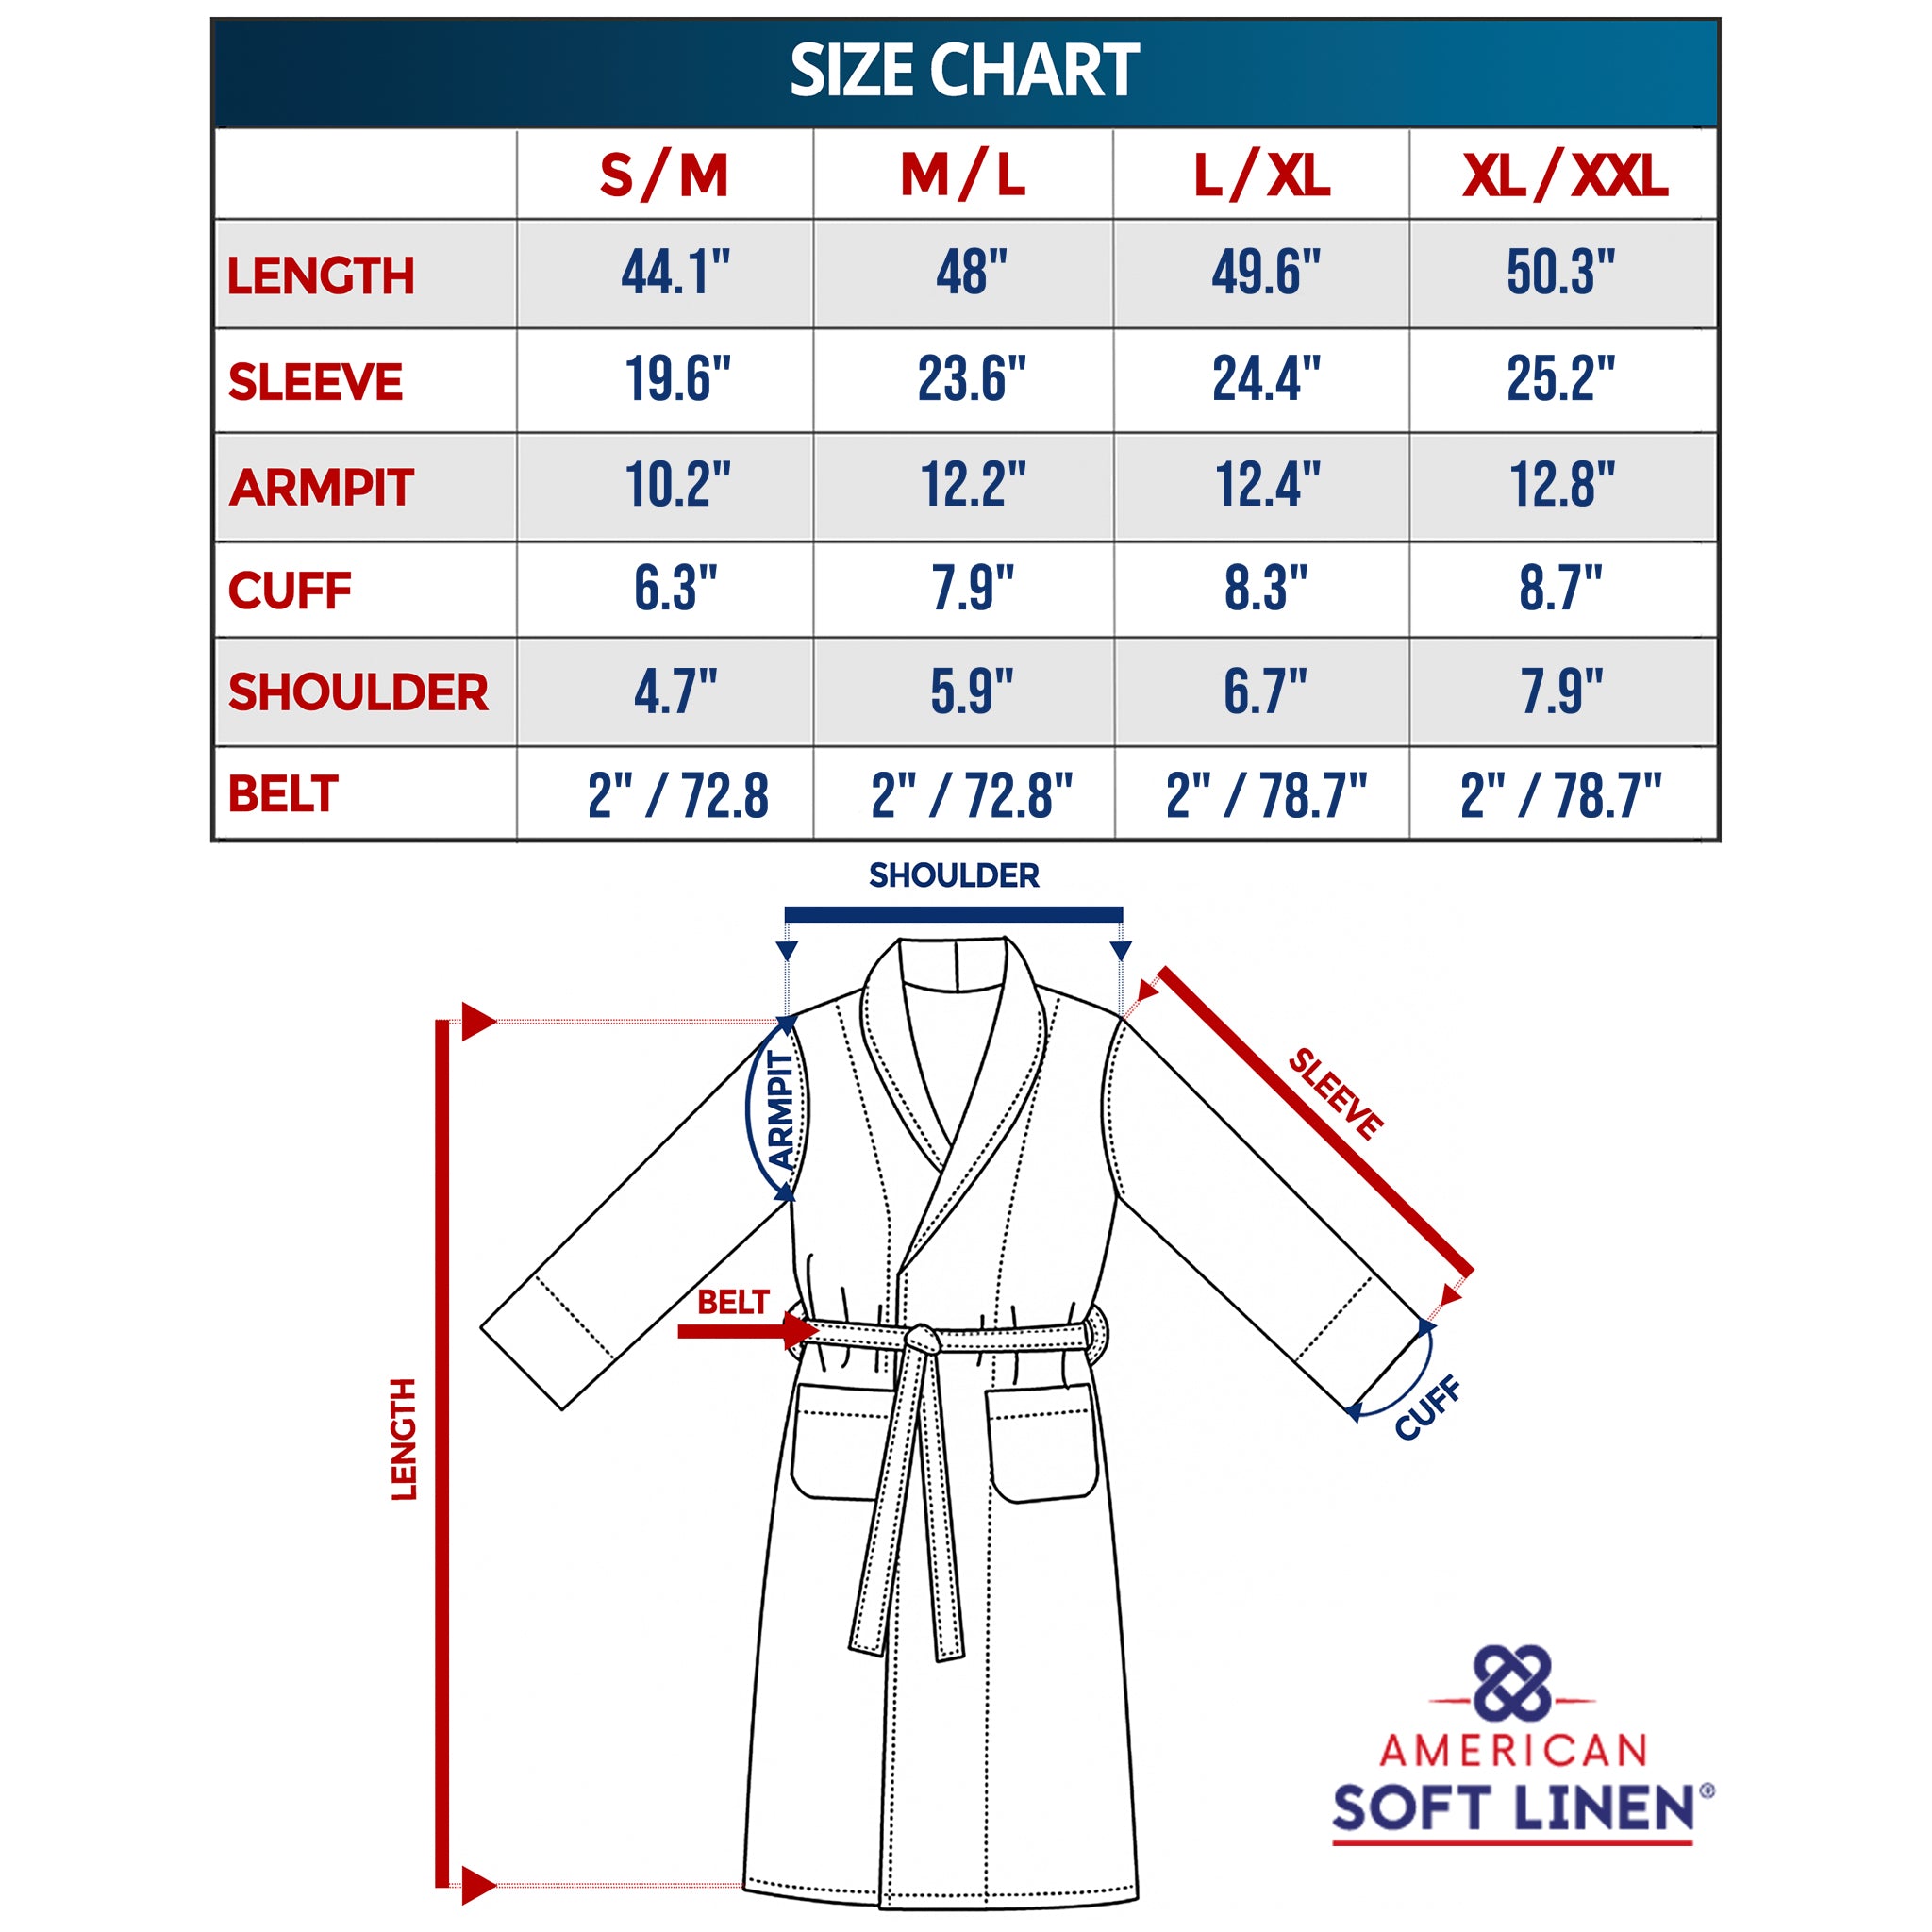 American Soft Linen Super Soft Absorbent and Fluffy Unisex Fleece Bathrobe -12 Set Case Pack -XL-XXL-navy-blue-4